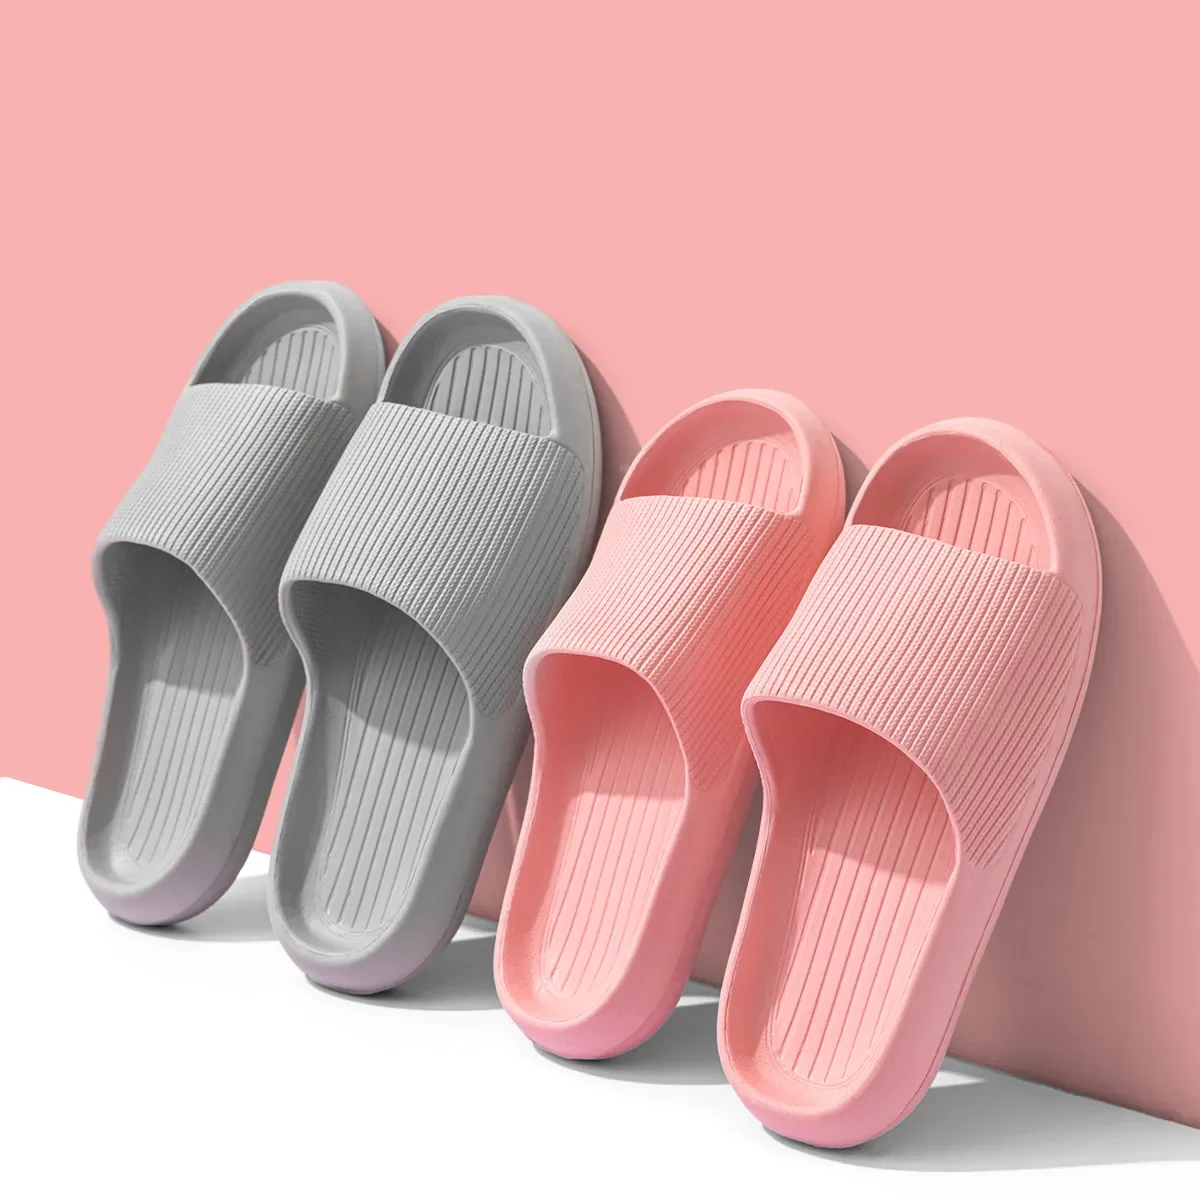 Nový móda muži ženy domácí bačkory ležérní převrátit flops pohodlné ploché koupelna ne kolíček bota párů léto pláž sandály